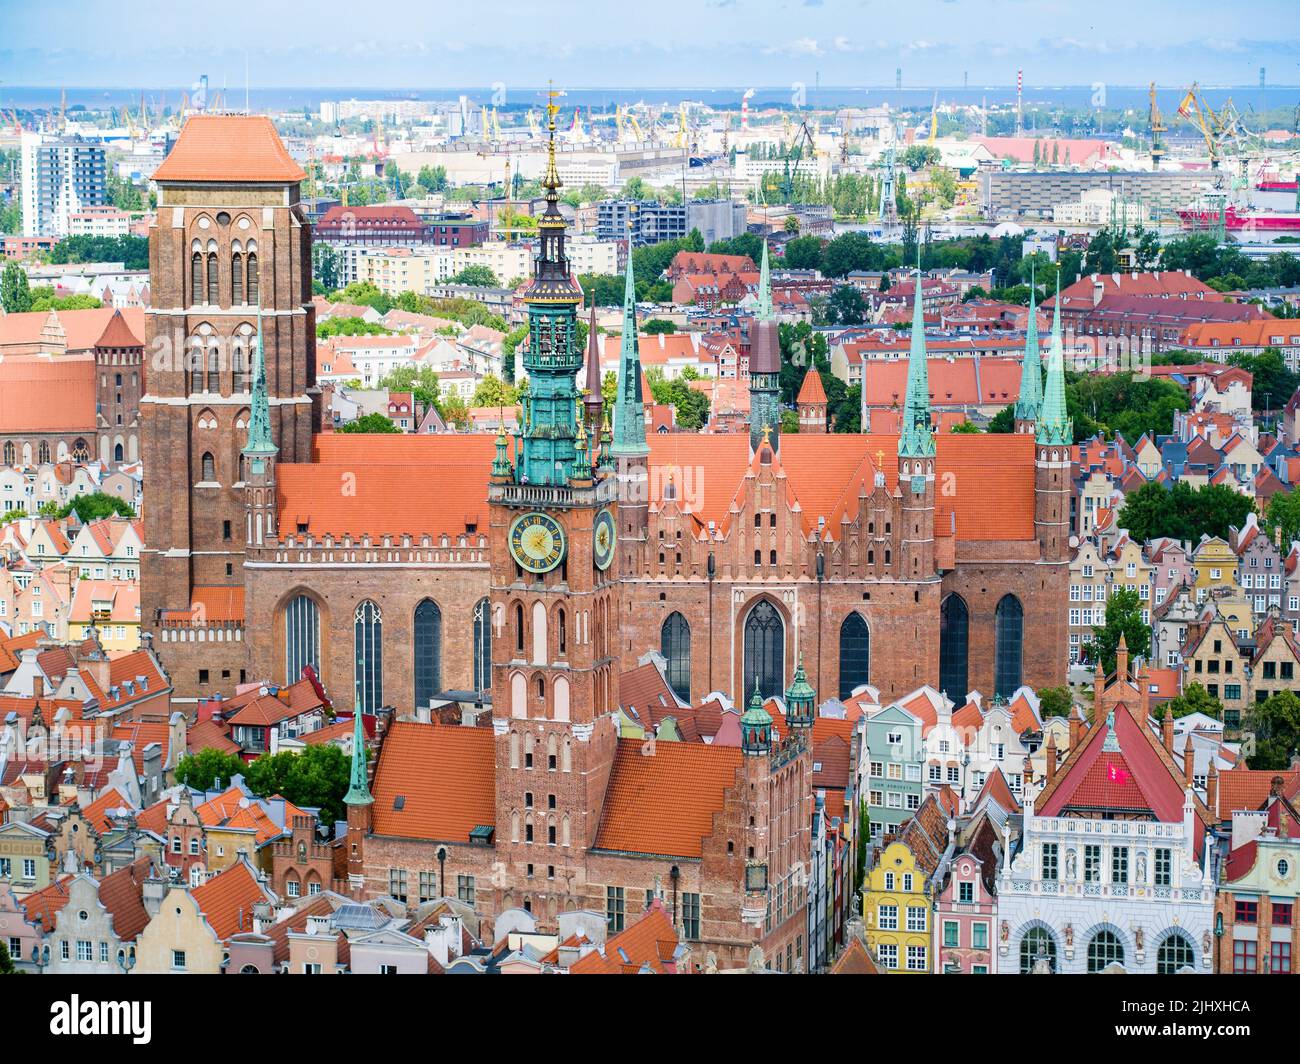 Touristisches Ziel von Danzig, Rathaus und St. Mary's Basilica, Luftlandschaft Stockfoto